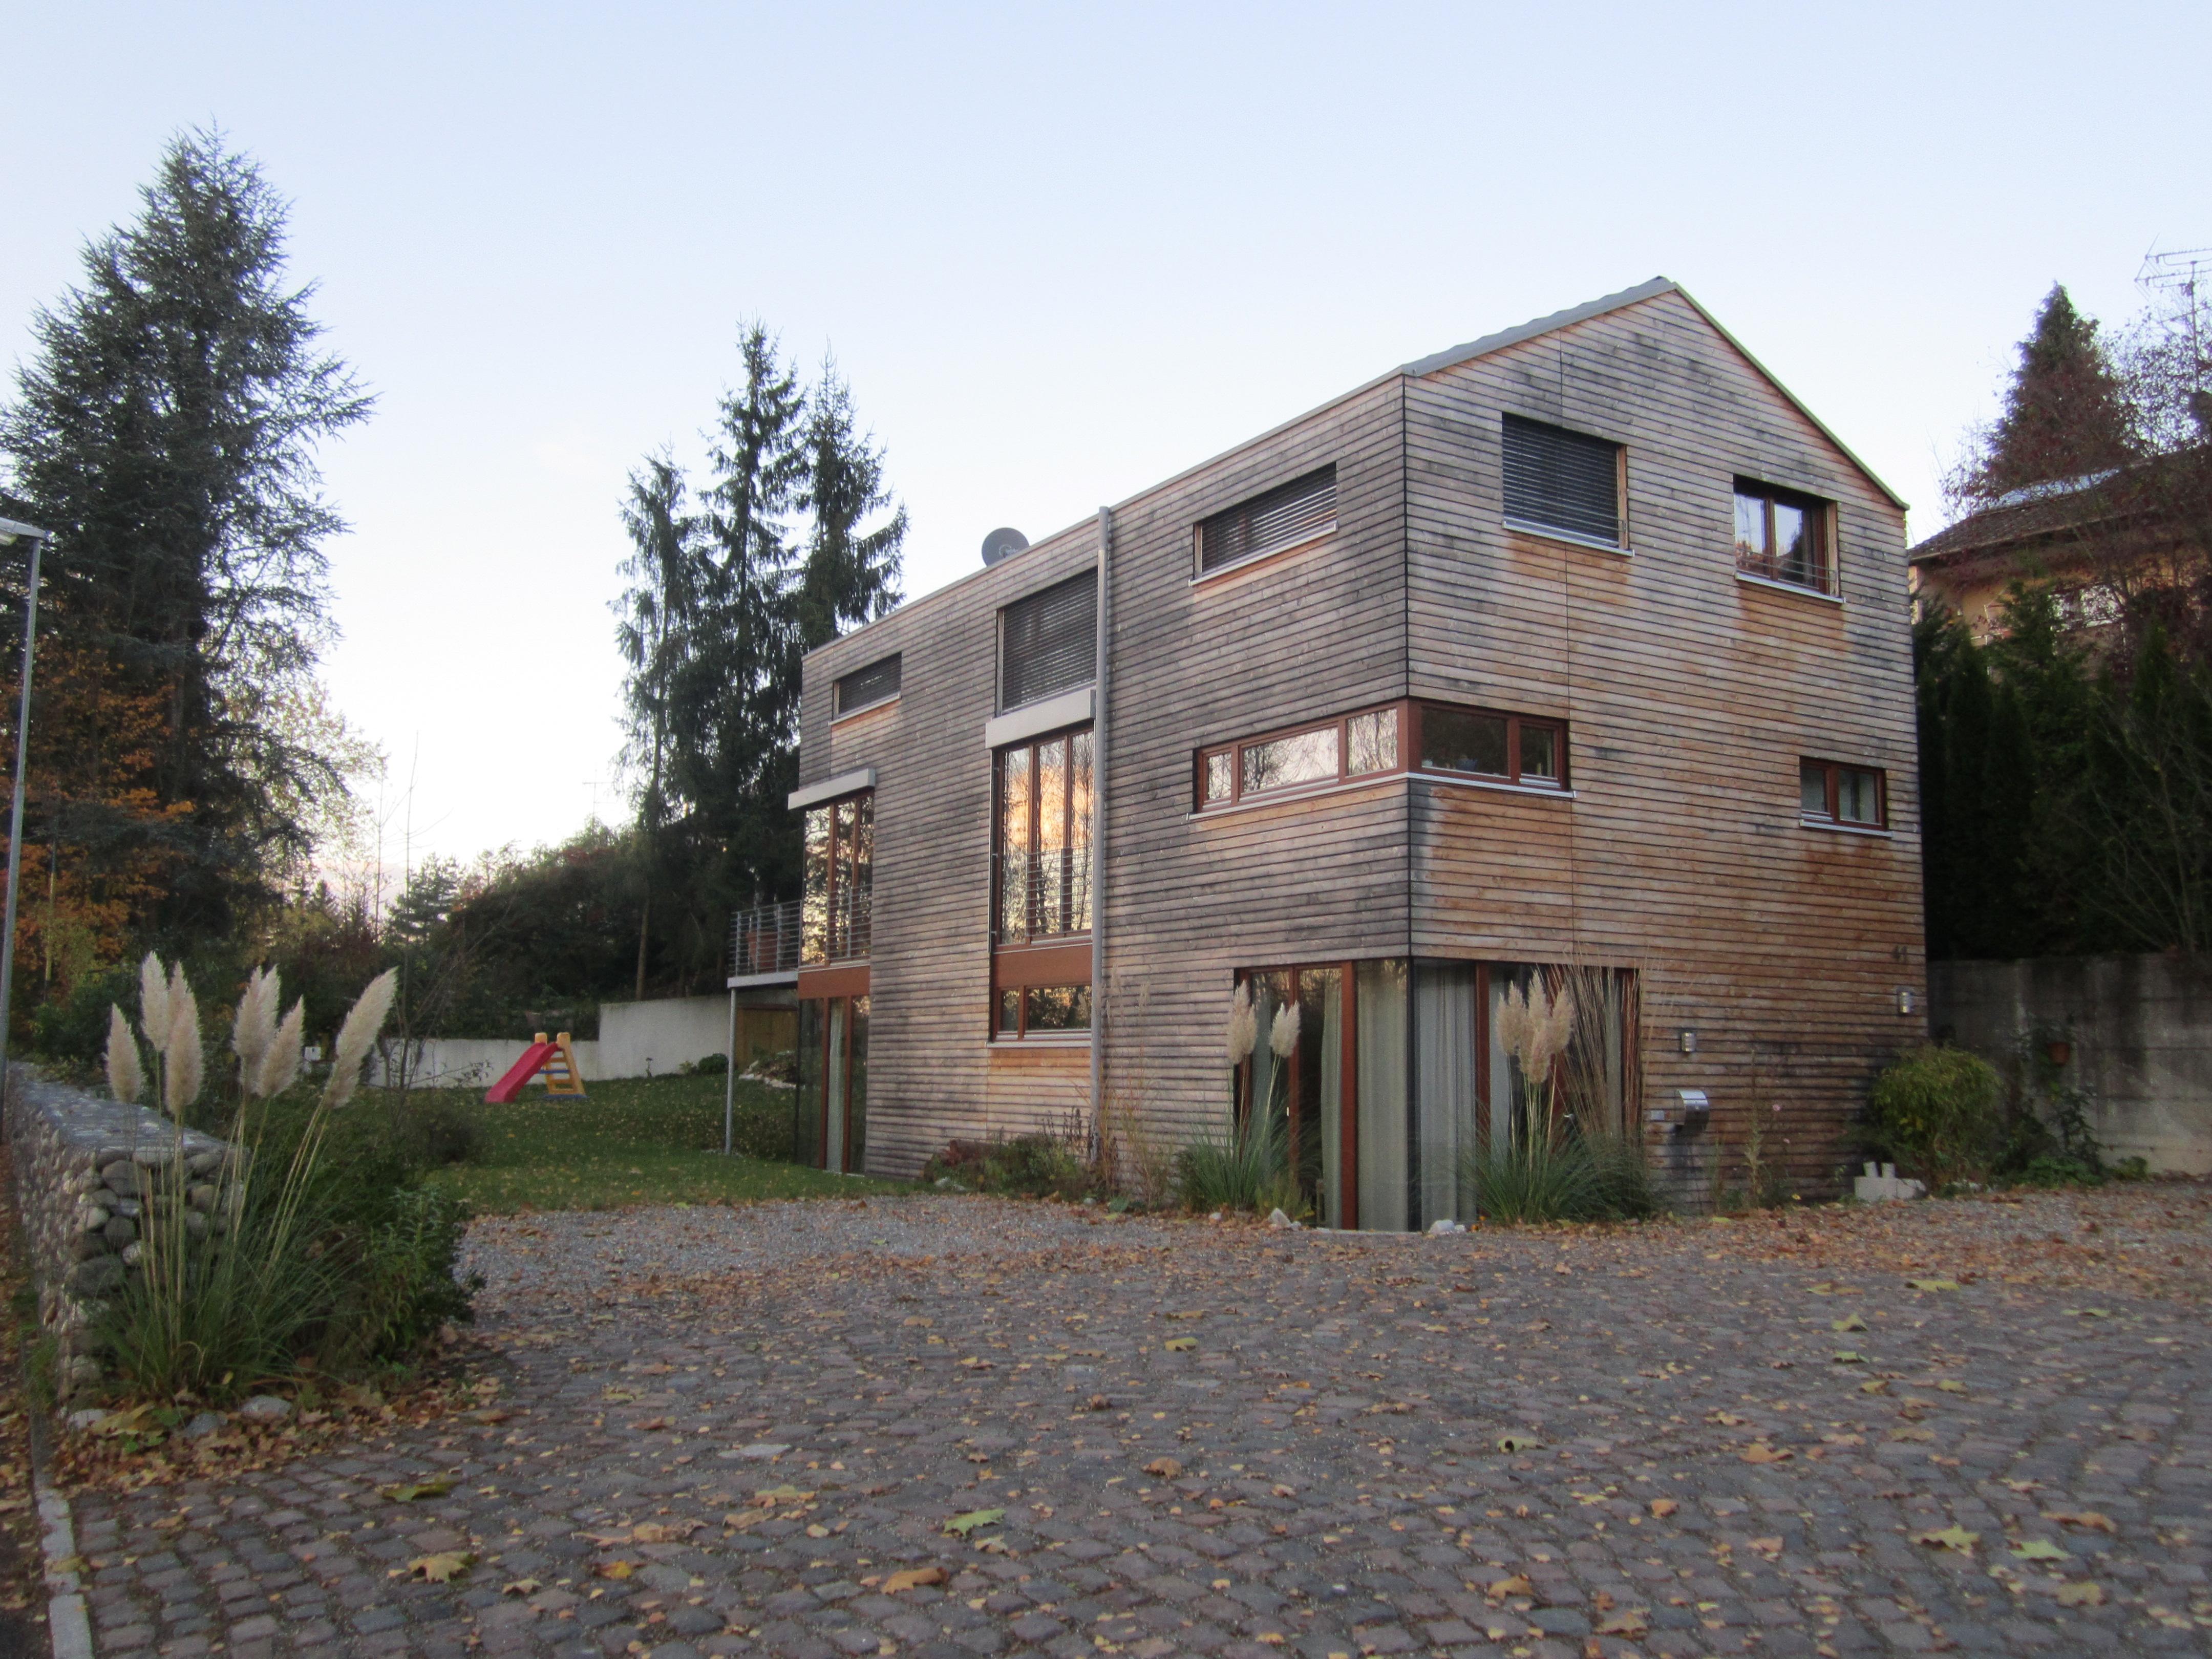 Niedrigenergie-Einfamilienhaus #holzhaus #hausgestaltung ©Spaett Architekten